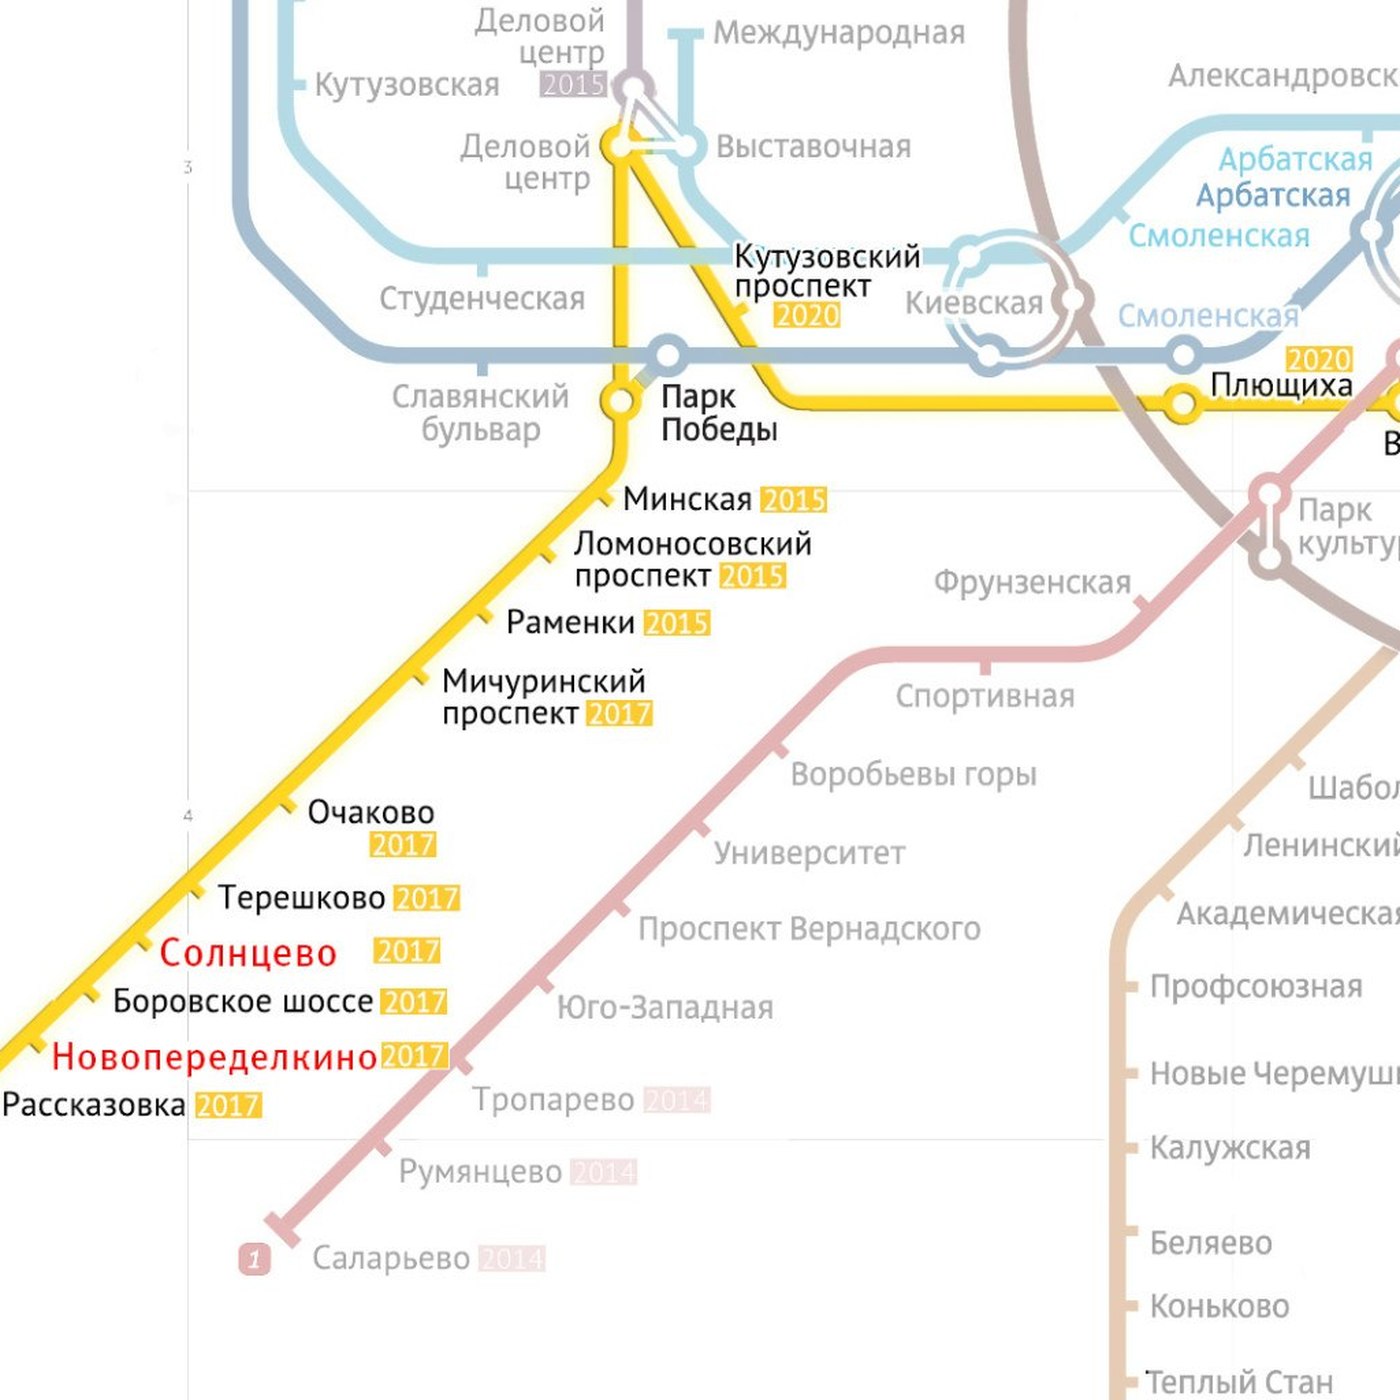 Какая станция сейчас играет. Жёлтая ветка метро Москвы на карте. Схема метро Москвы желтая ветка линия станции. Жёлтая ветка метро Москвы на карте со станциями. Метро Москва Калининско-Солнцевская линия.